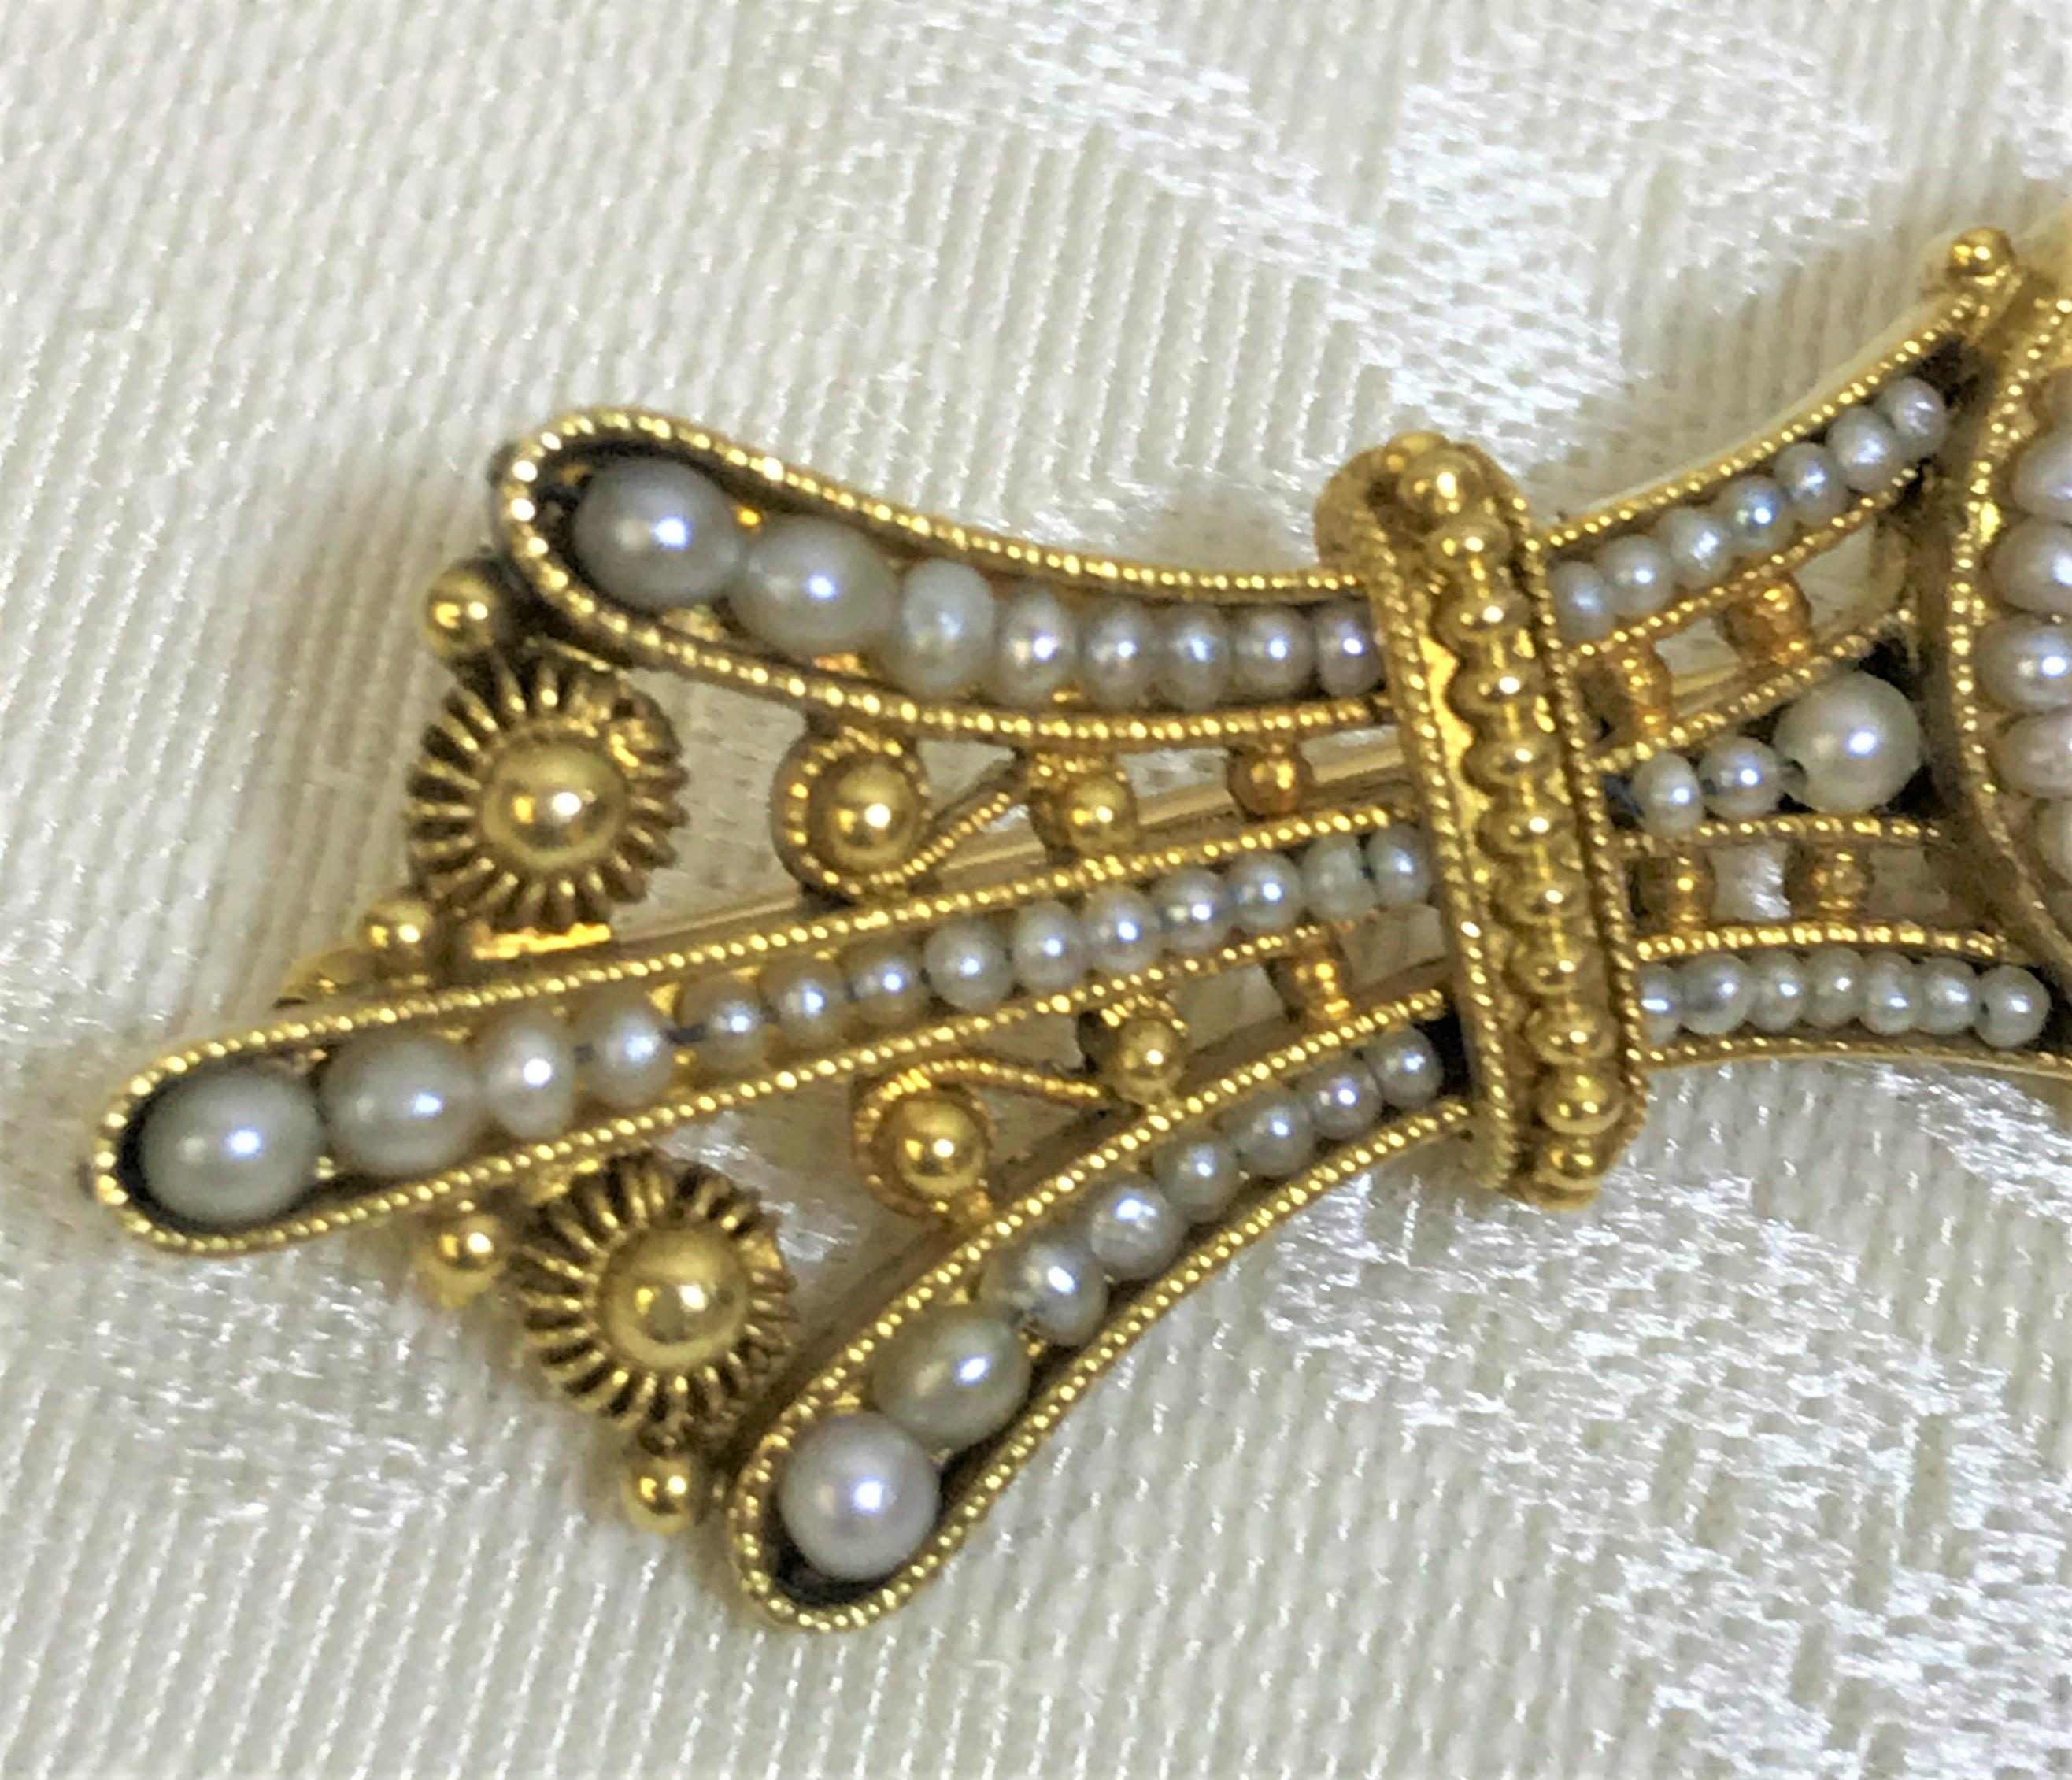 Dies ist ein einmalig schönes Stück, das jedes Outfit vervollständigt!
Zentrum etwa 2 Karat Cabochon Lapis Perle 
Lapis ist umgeben von verziertem 14-karätigem Gelbgold und winzigen grauen Perlen

